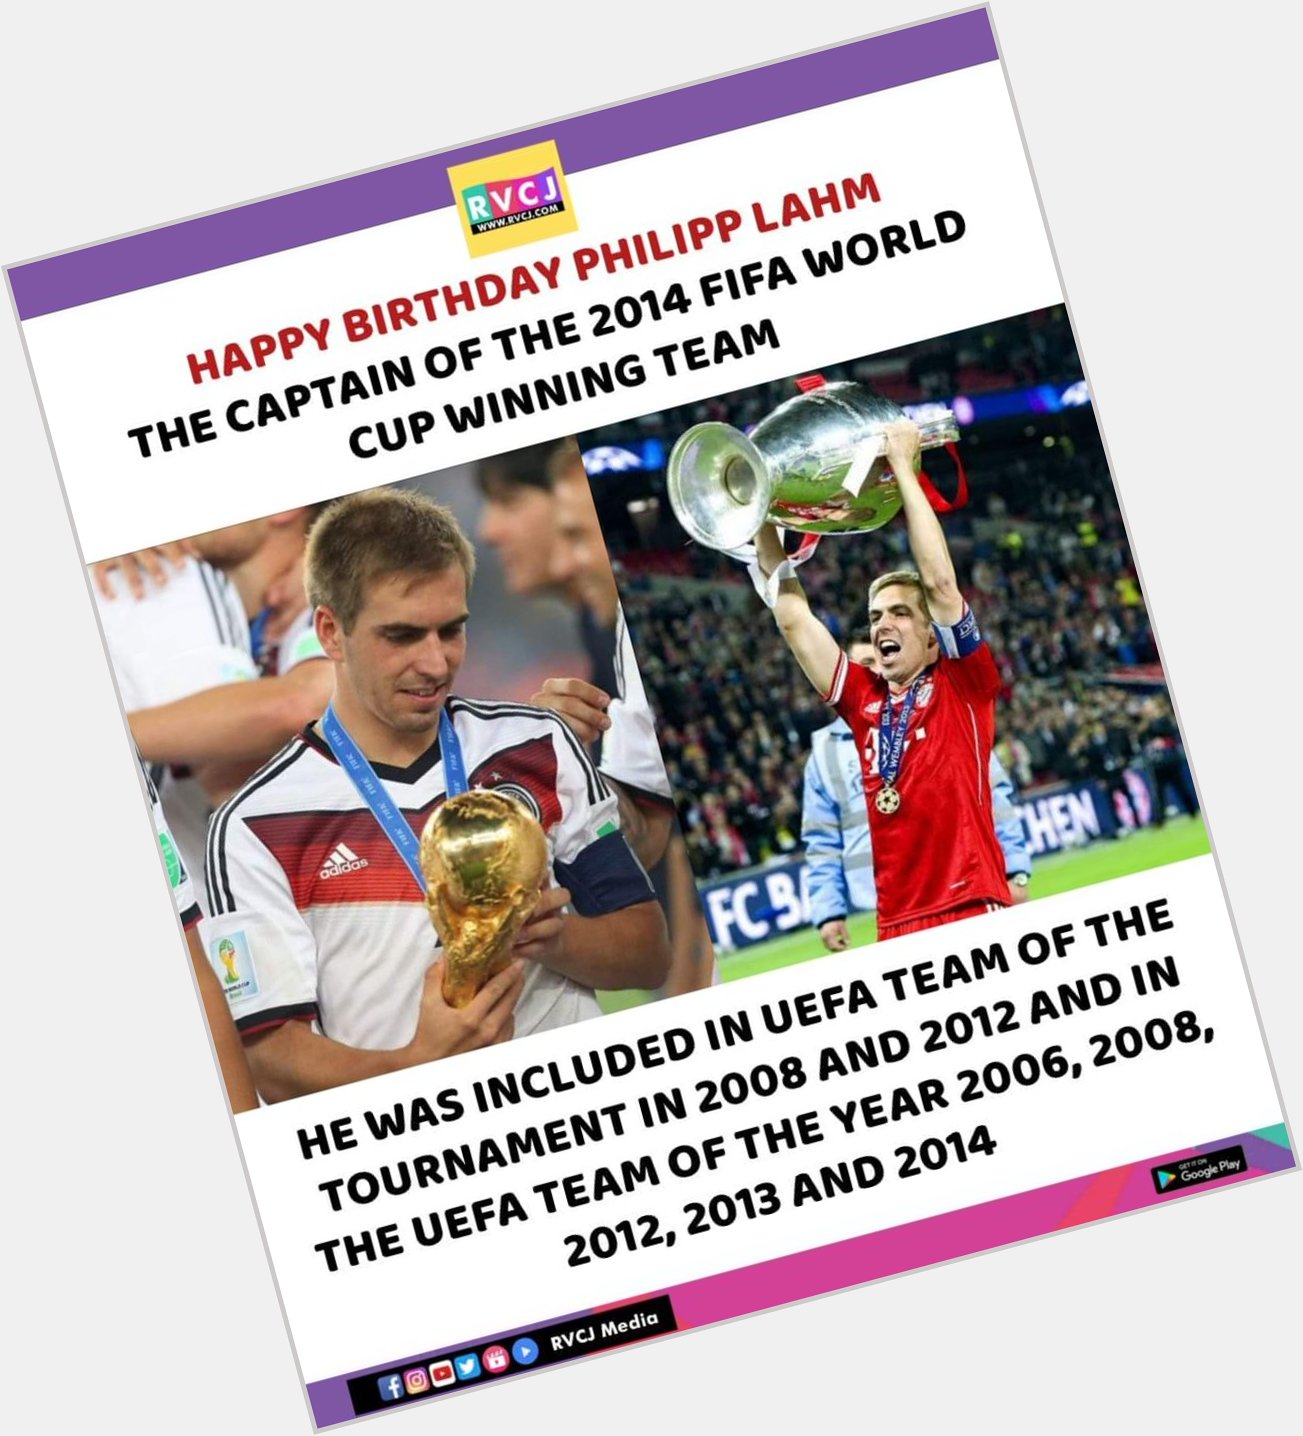 Happy Birthday Philipp Lahm!  